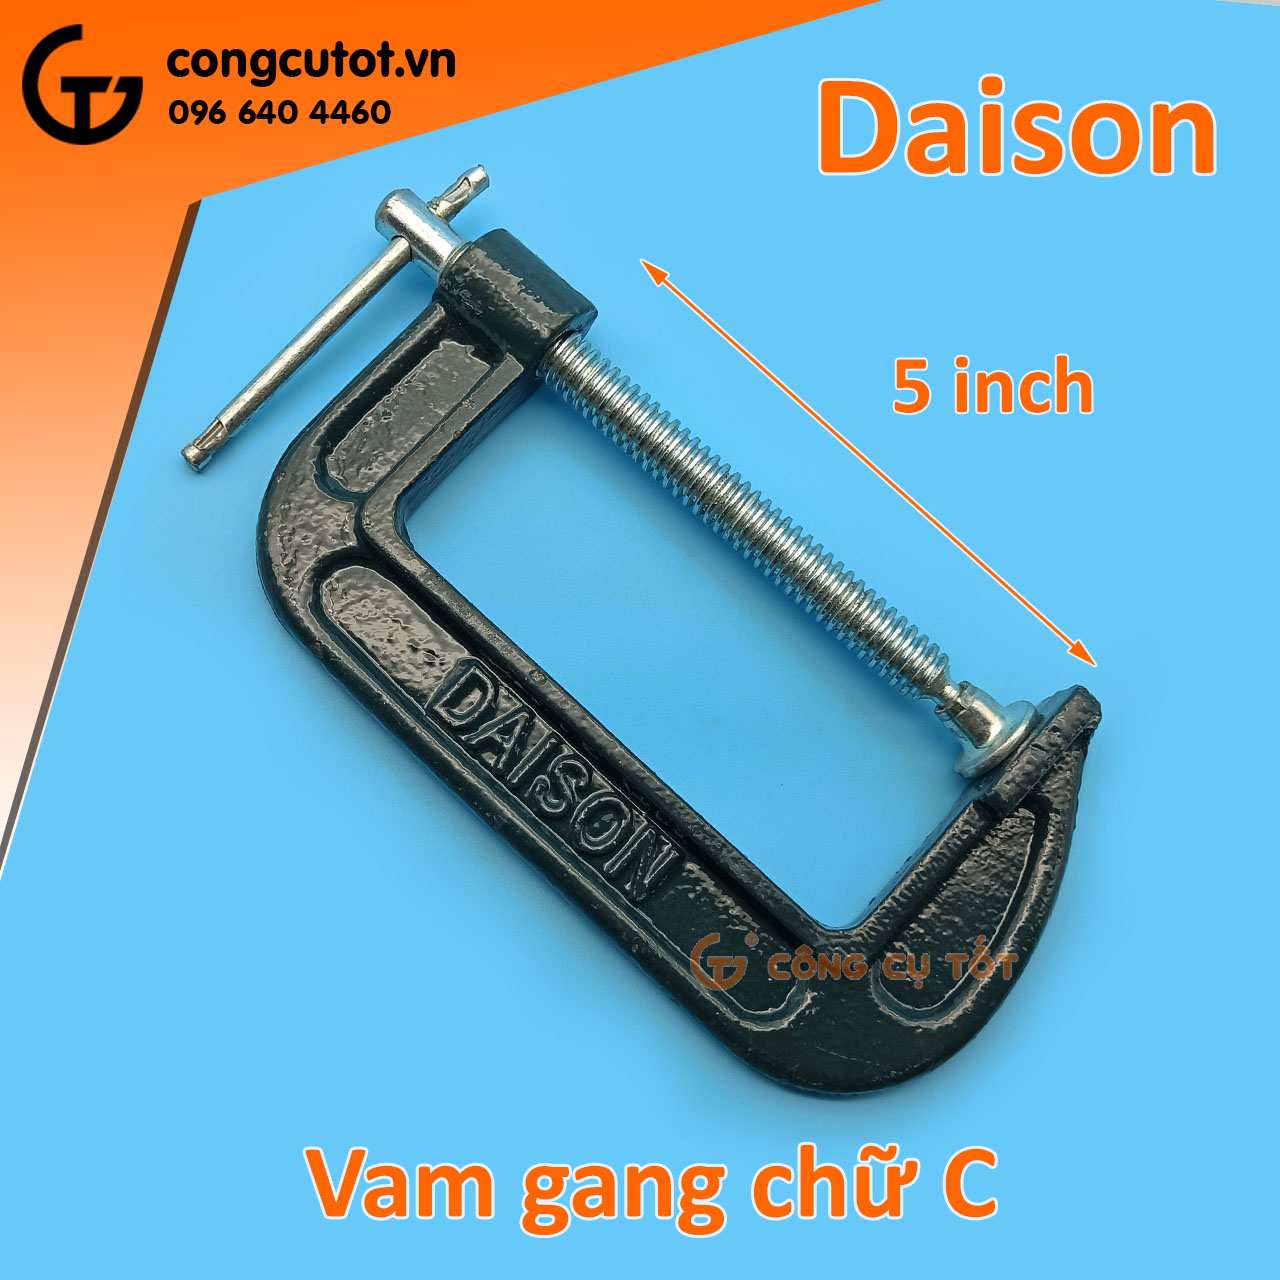 Vam chữ C thương hiệu Daison 5 inch